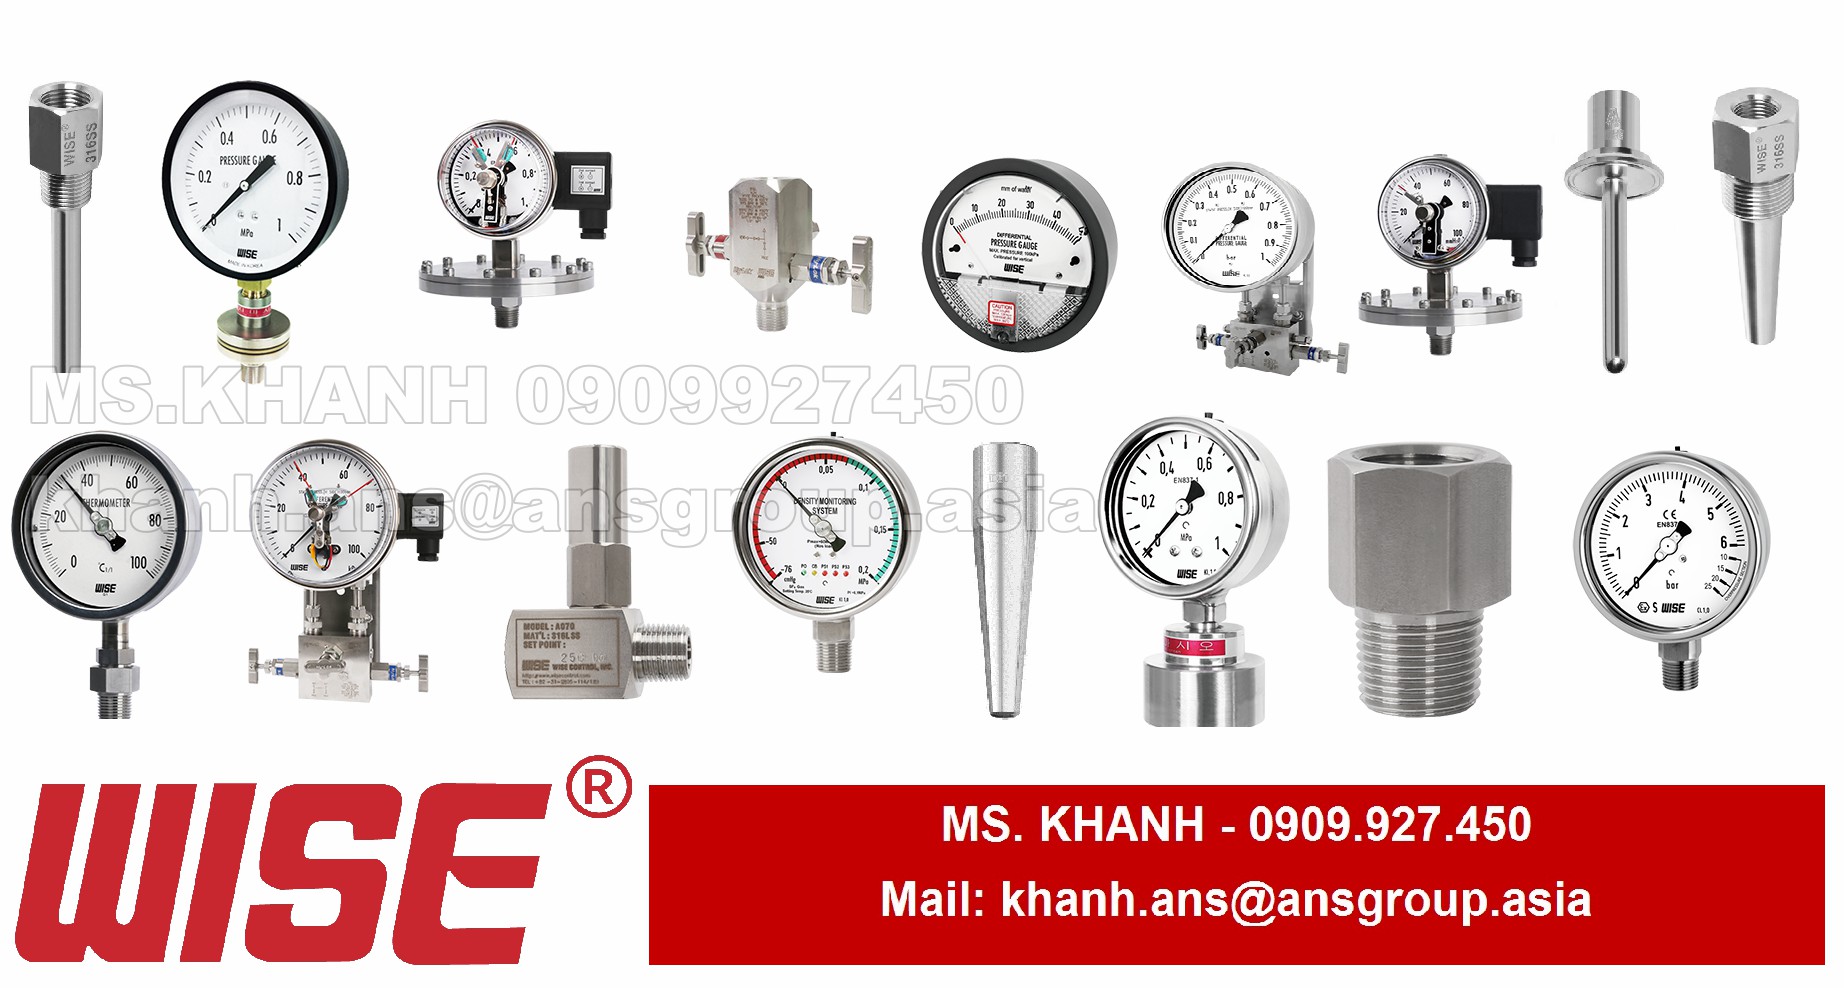 dong-ho-ap-suat-p2526a3ech04730-p252-industrial-pressure-gauge-wise-control-vietnam.png